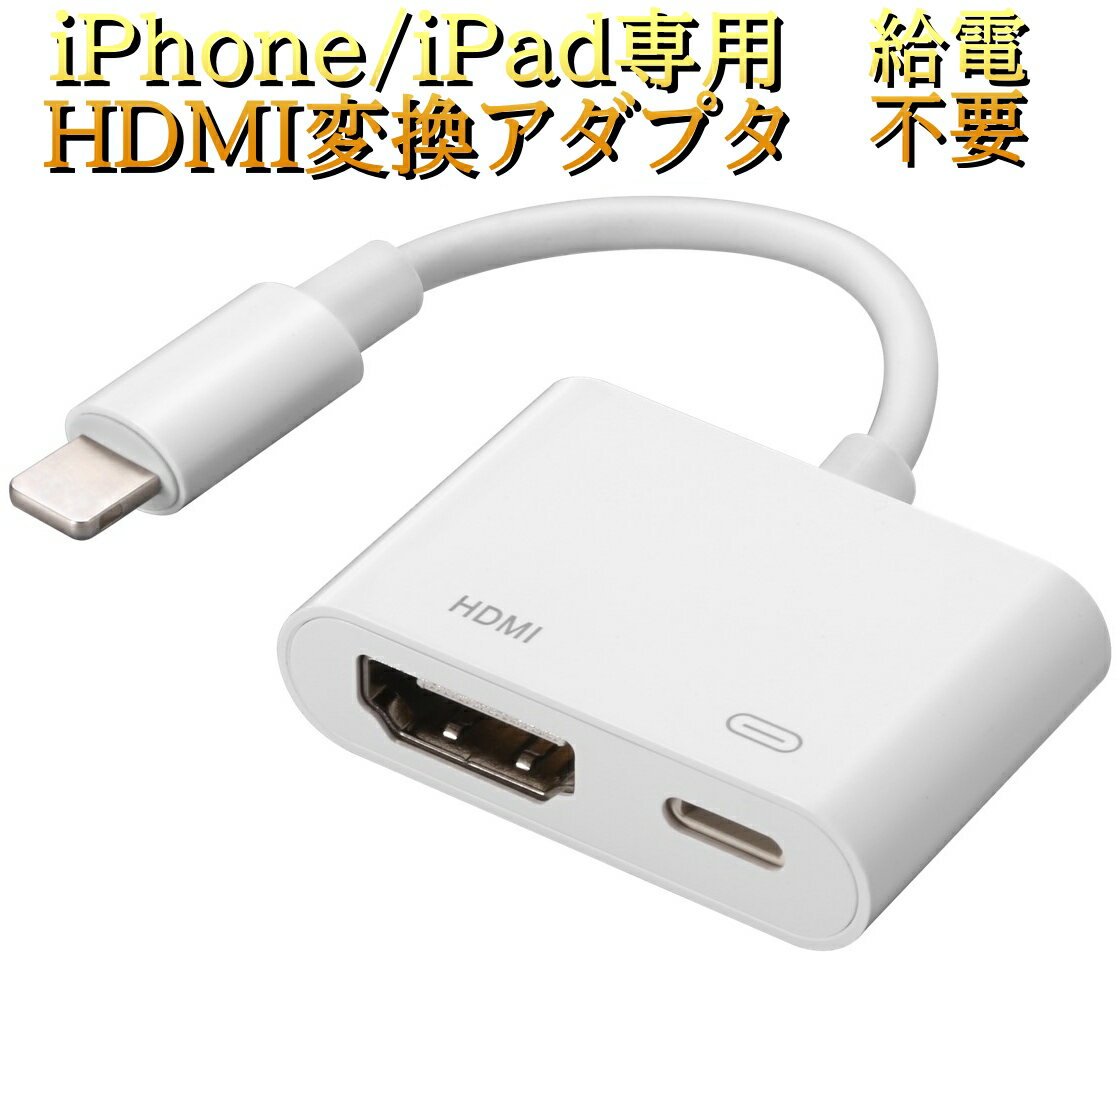 激安セール Phone HDMI 変換アダプタ sushitai.com.mx